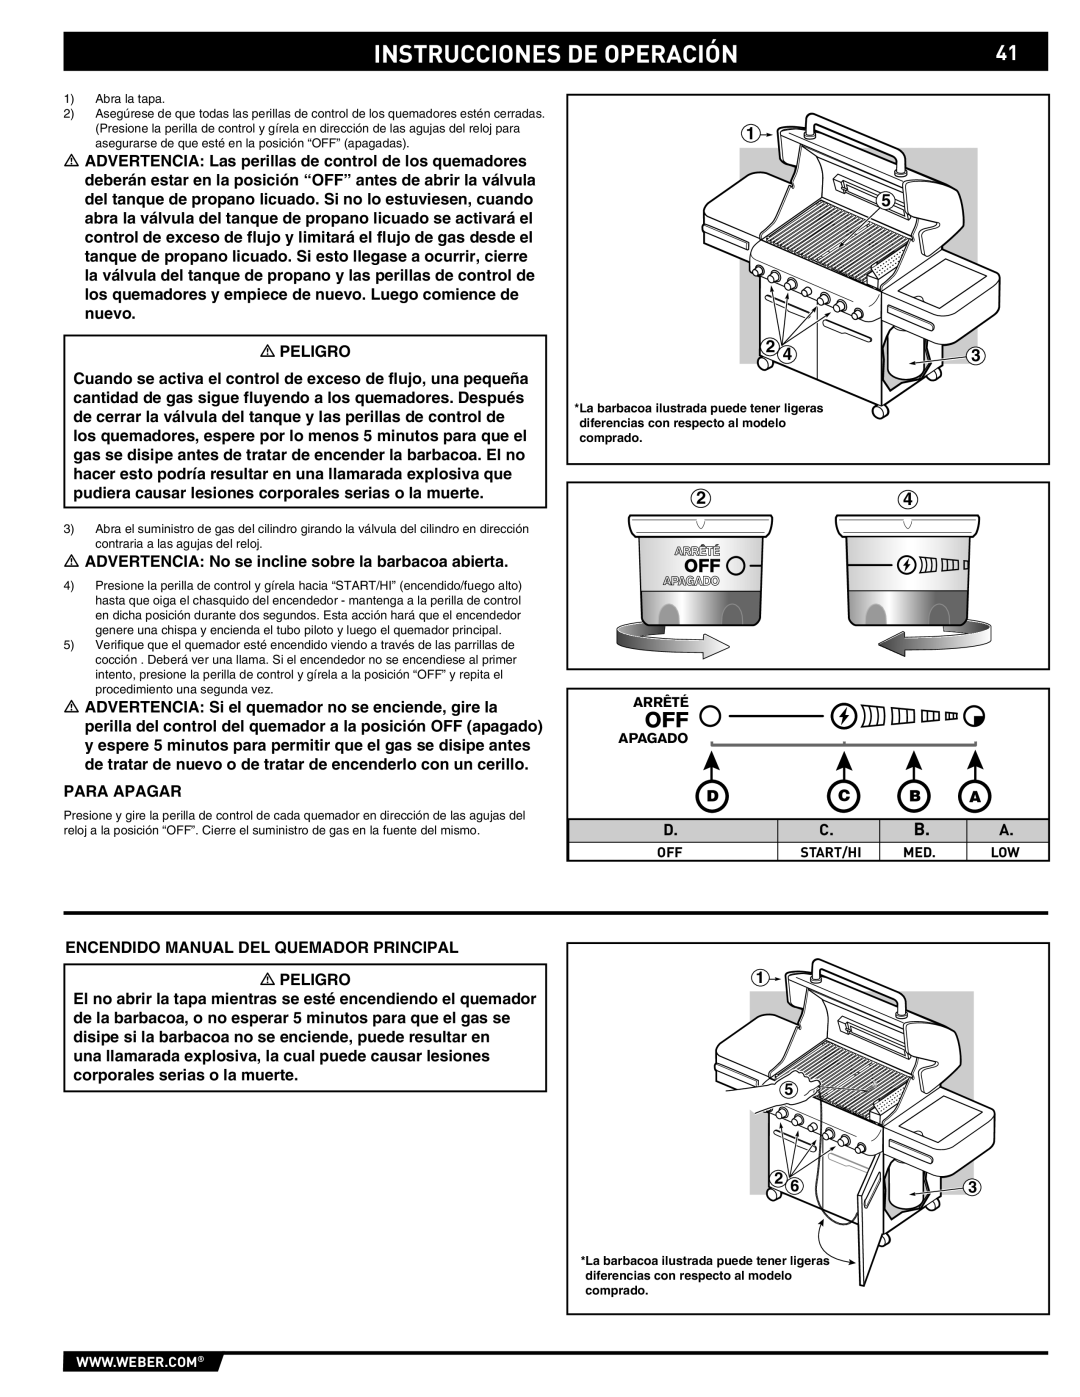 Summit 89190 manual Instrucciones De Operación, D C B A, Abra la tapa 